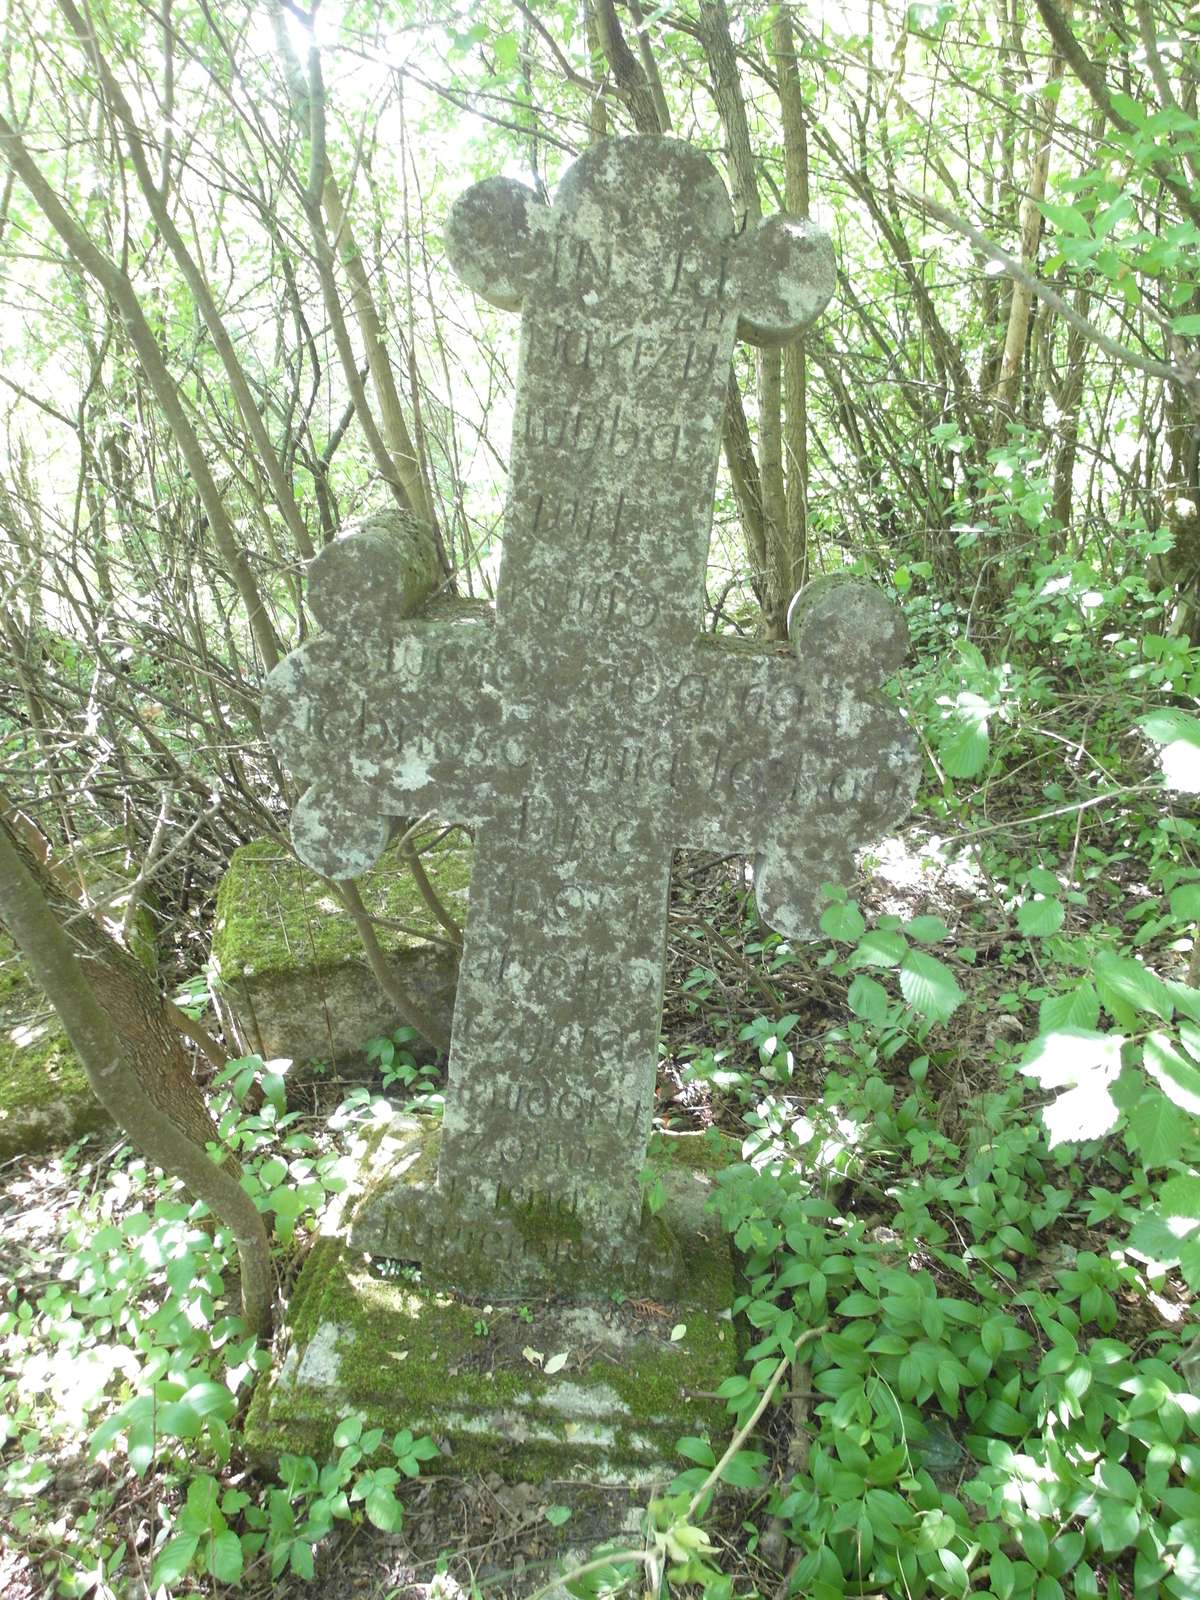 Tombstone of Jan Mroczkowski. Cemetery in Kokutkowce